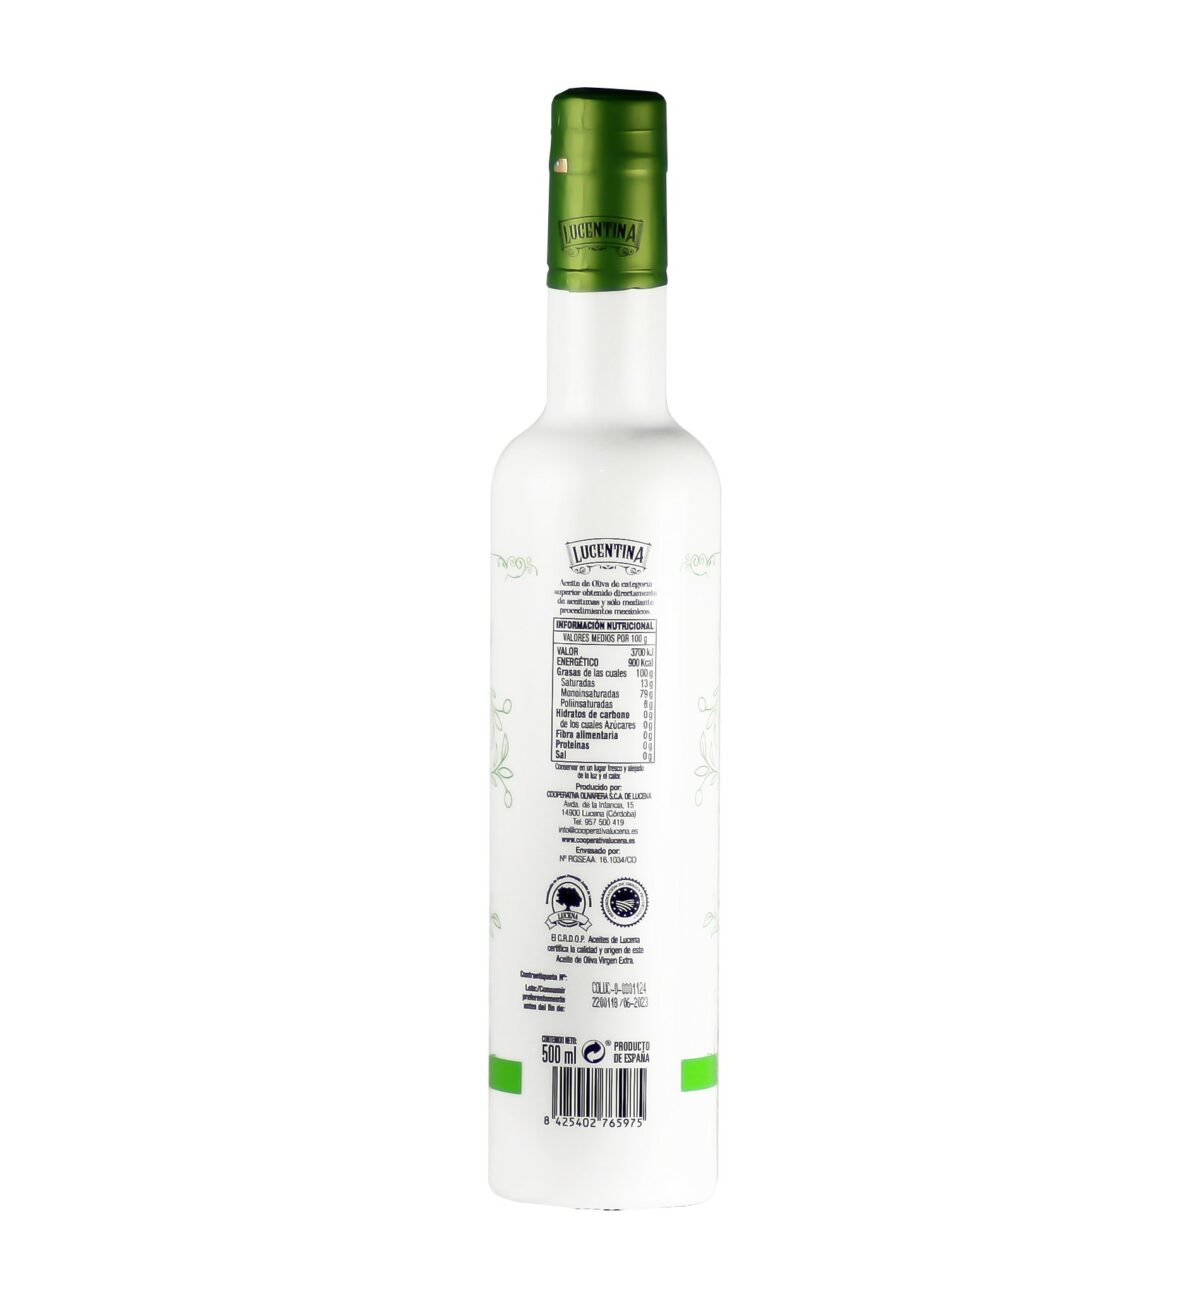 Aceite de oliva virgen extra Lucentina edición limitada 500 ml por detrás